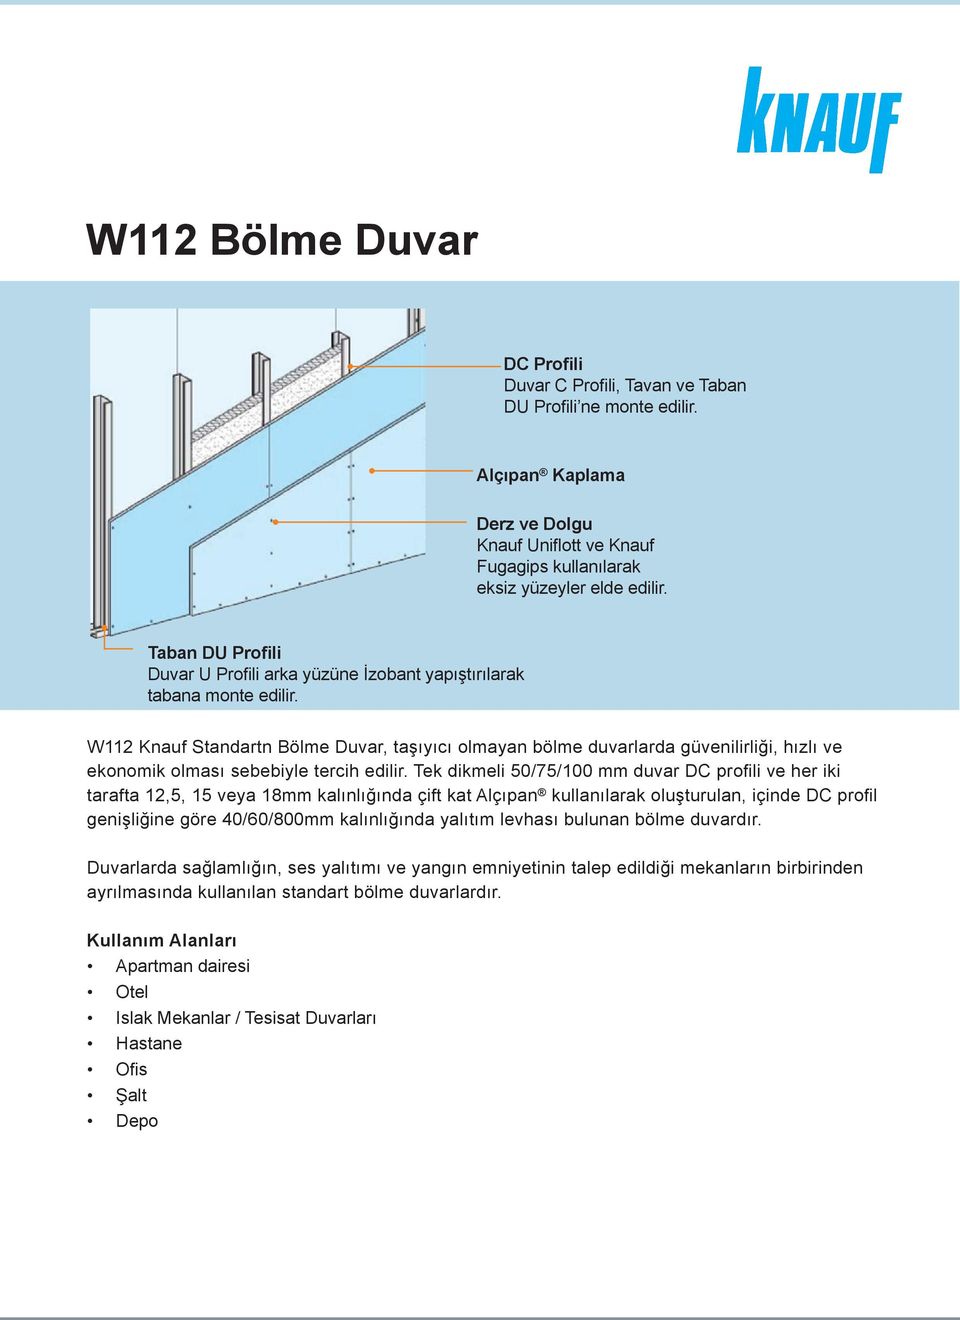 W112 Knauf Standartn Bölme Duvar, taşıyıcı olmayan bölme duvarlarda güvenilirliği, hızlı ve ekonomik olması sebebiyle tercih edilir.